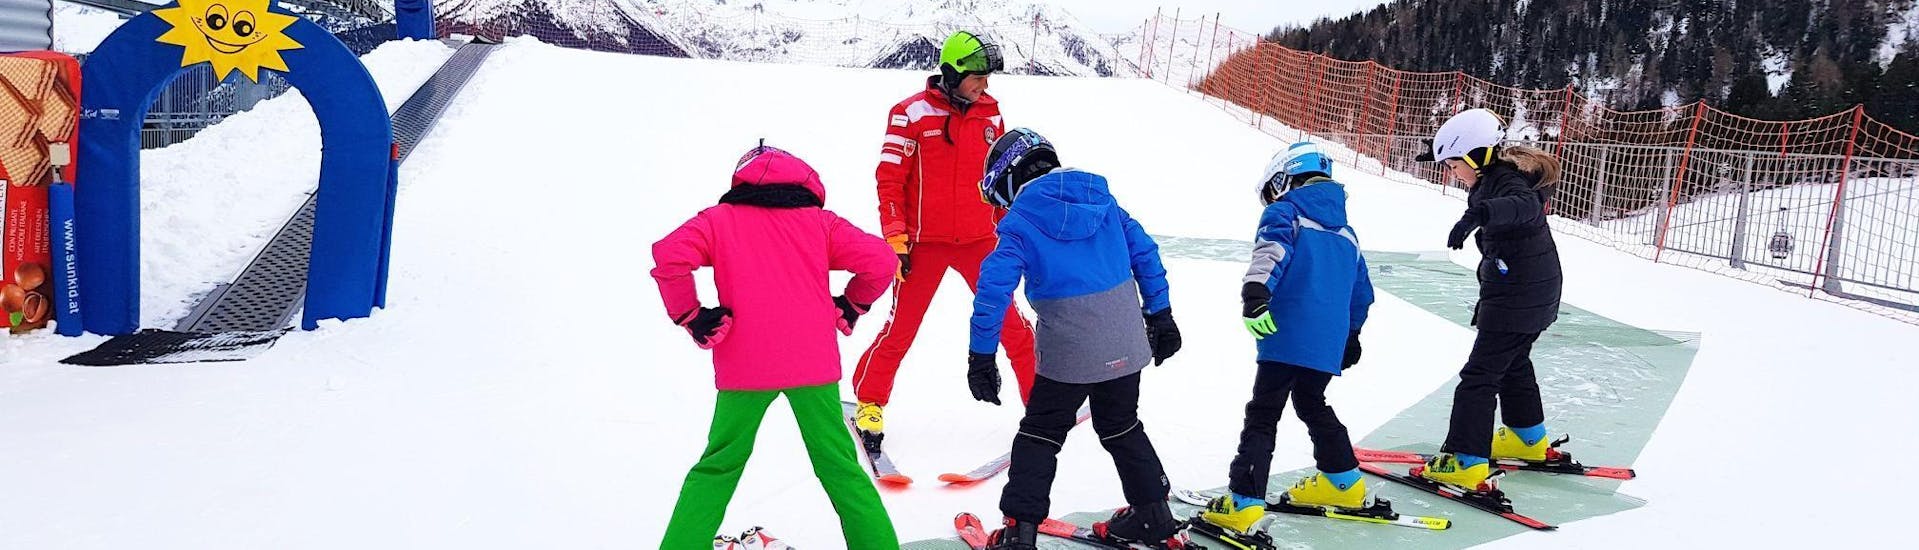 Maestro di sci e bambini pronti ad iniziare la lezione di sci a Speikboden - Campo Tures (Sand in Taufers) - Lezioni private di sci per bambini "VIP Club".